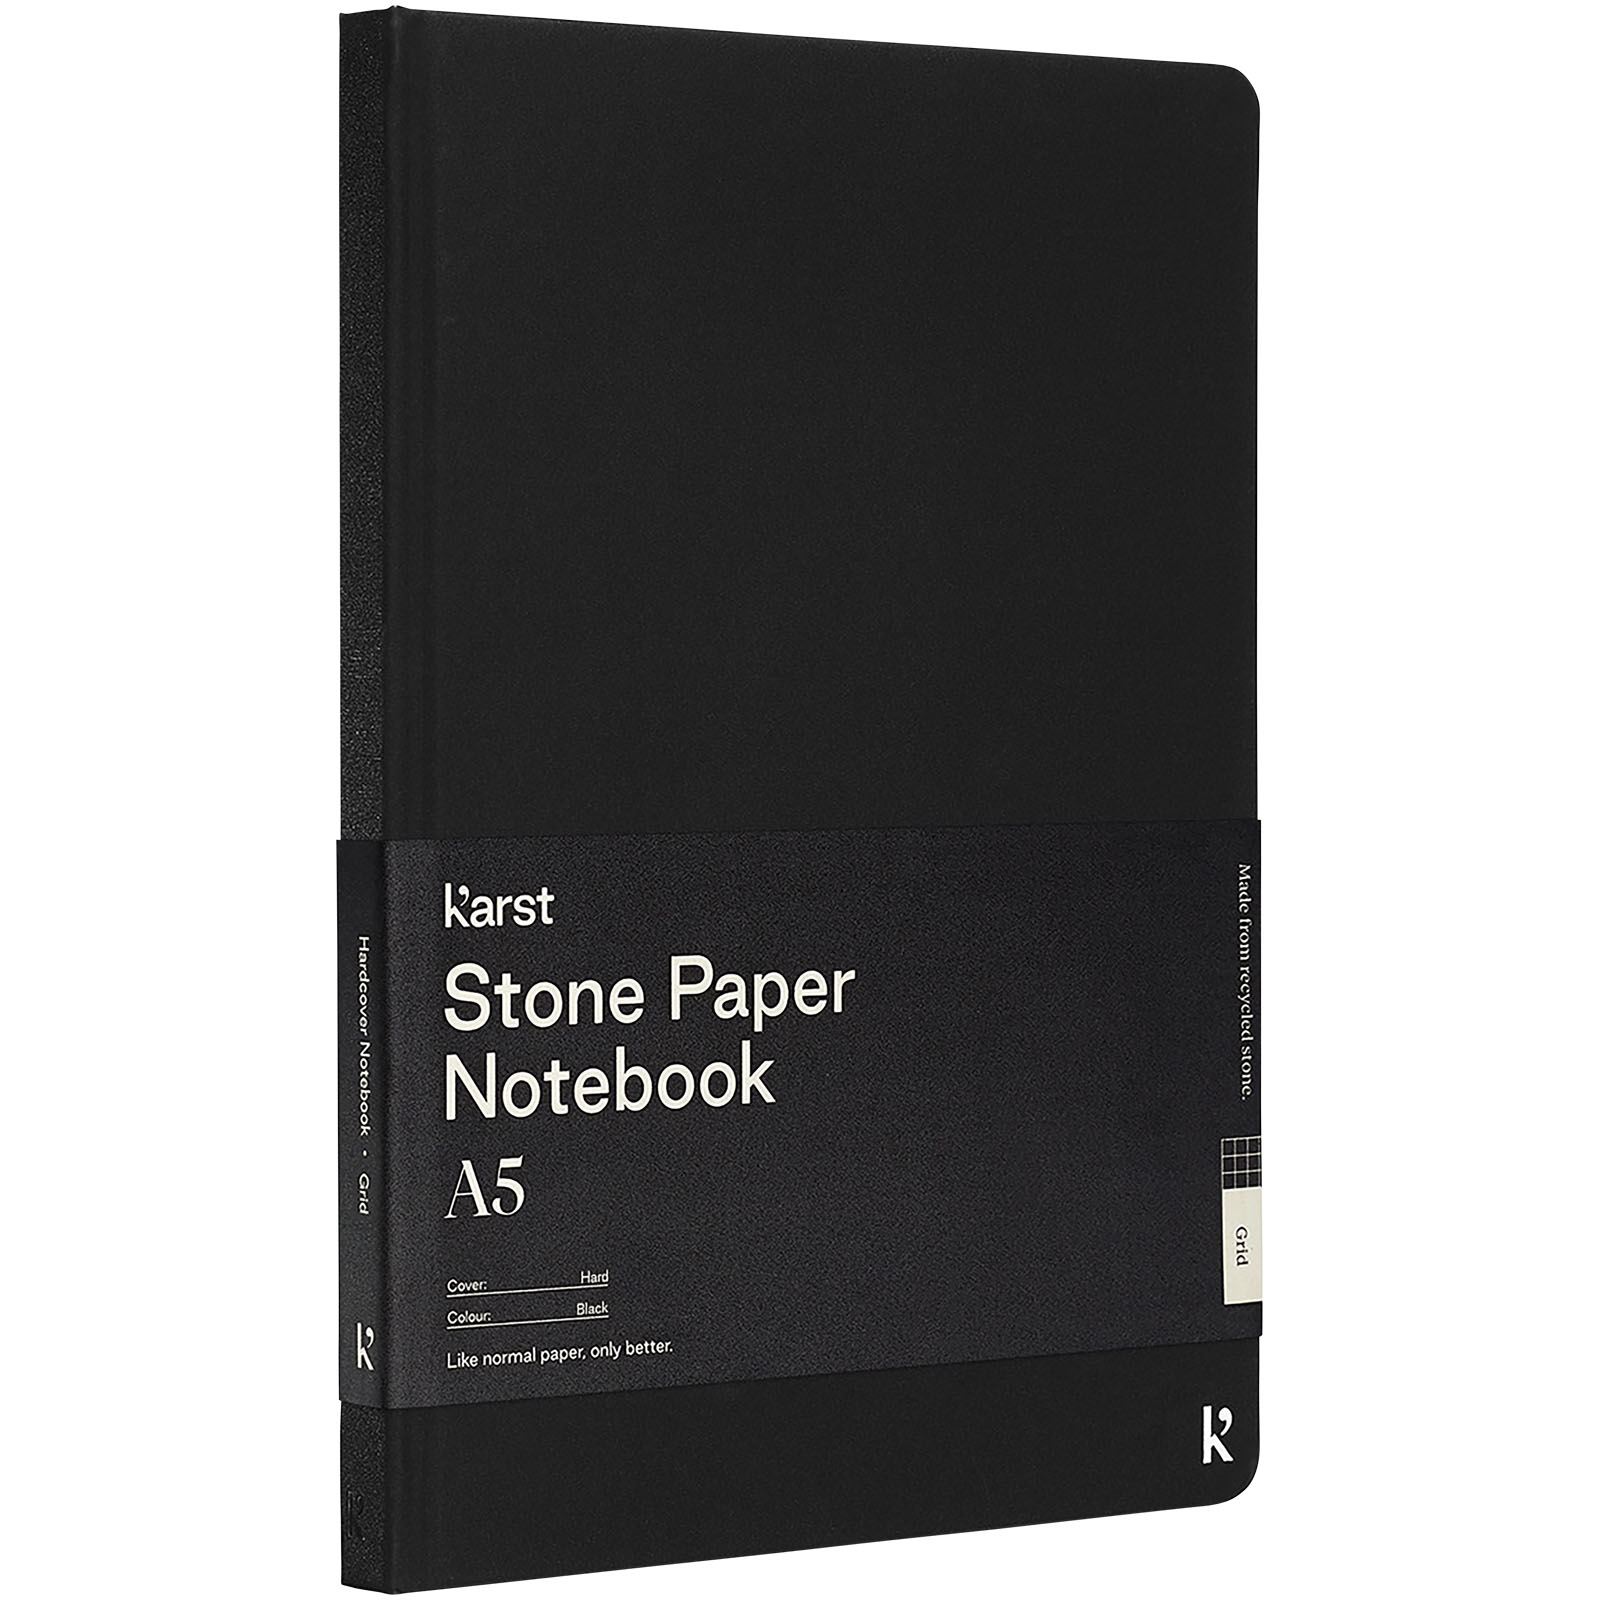 Blocs-notes et essentiels pour le bureau - Carnet de notes Karst® A5 avec papier de pierre à couverture rigide - Carré